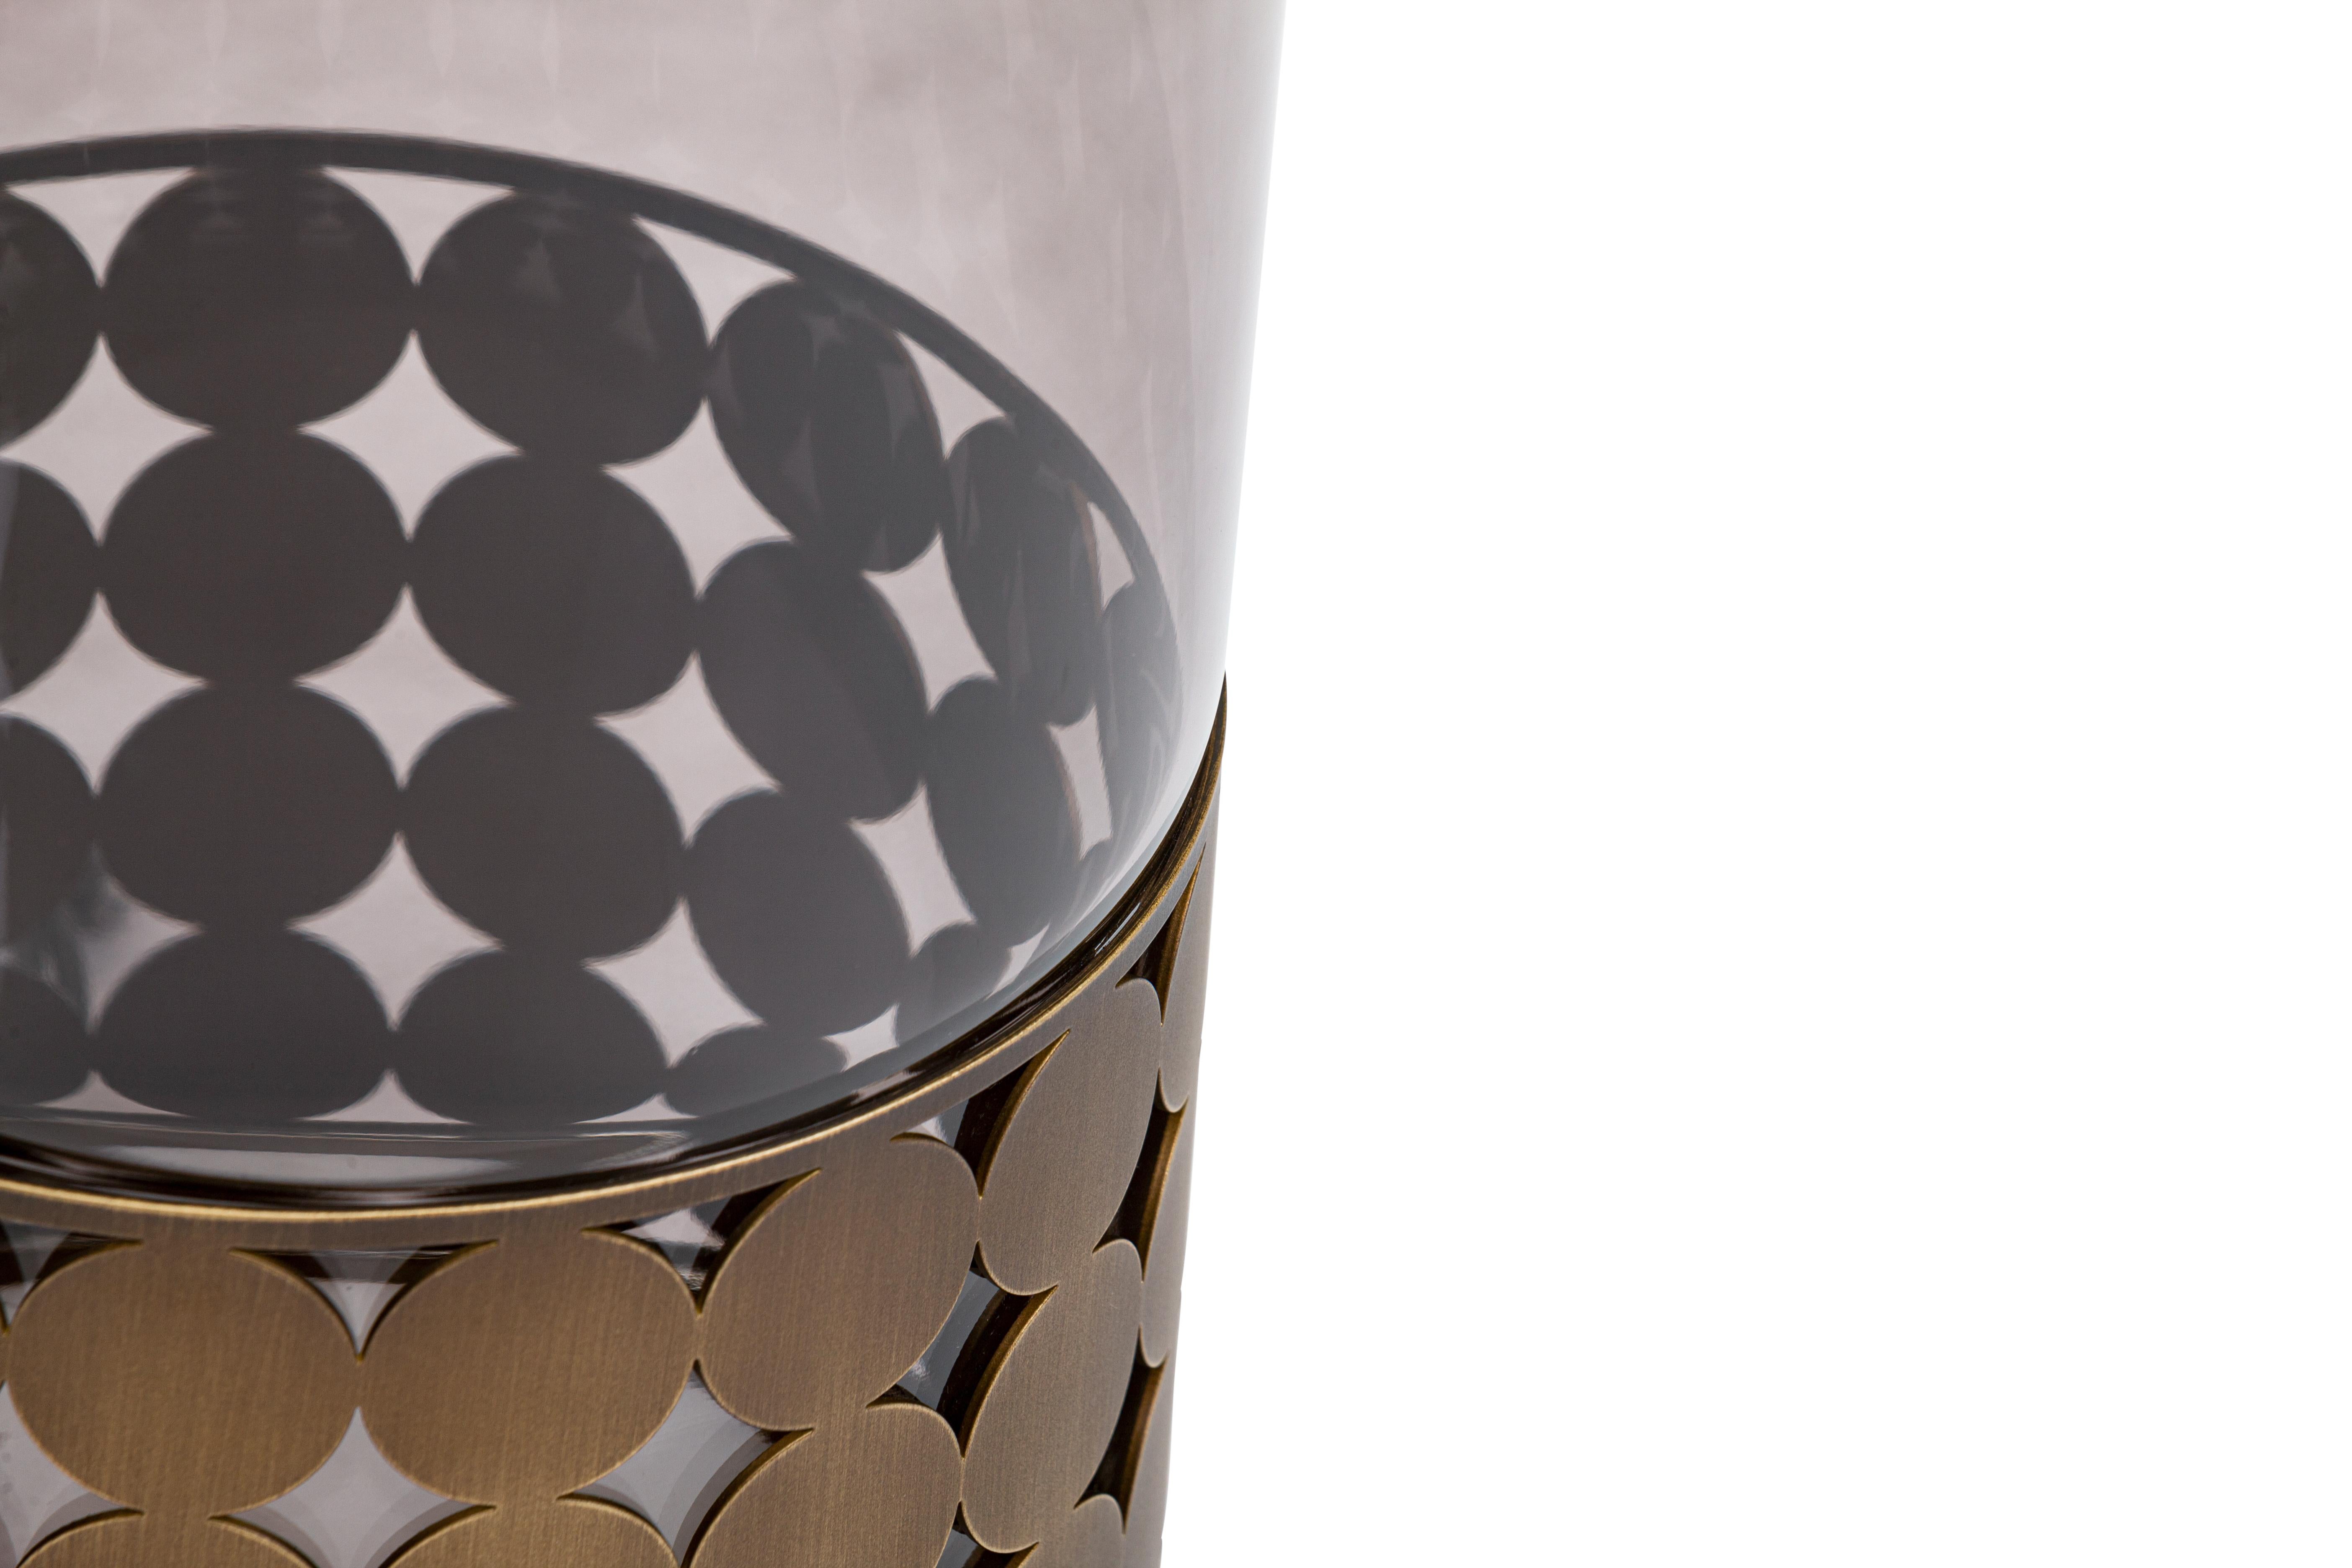 Lampe de table Art déco Elie Saab maison du XXIe siècle en métal bronzé, Italie.

Inspirées par l'effet de lumière magique du phénomène optique atmosphérique, les lampes Light Pillar sont à la fois intemporelles et contemporaines. Corps d'éclairage